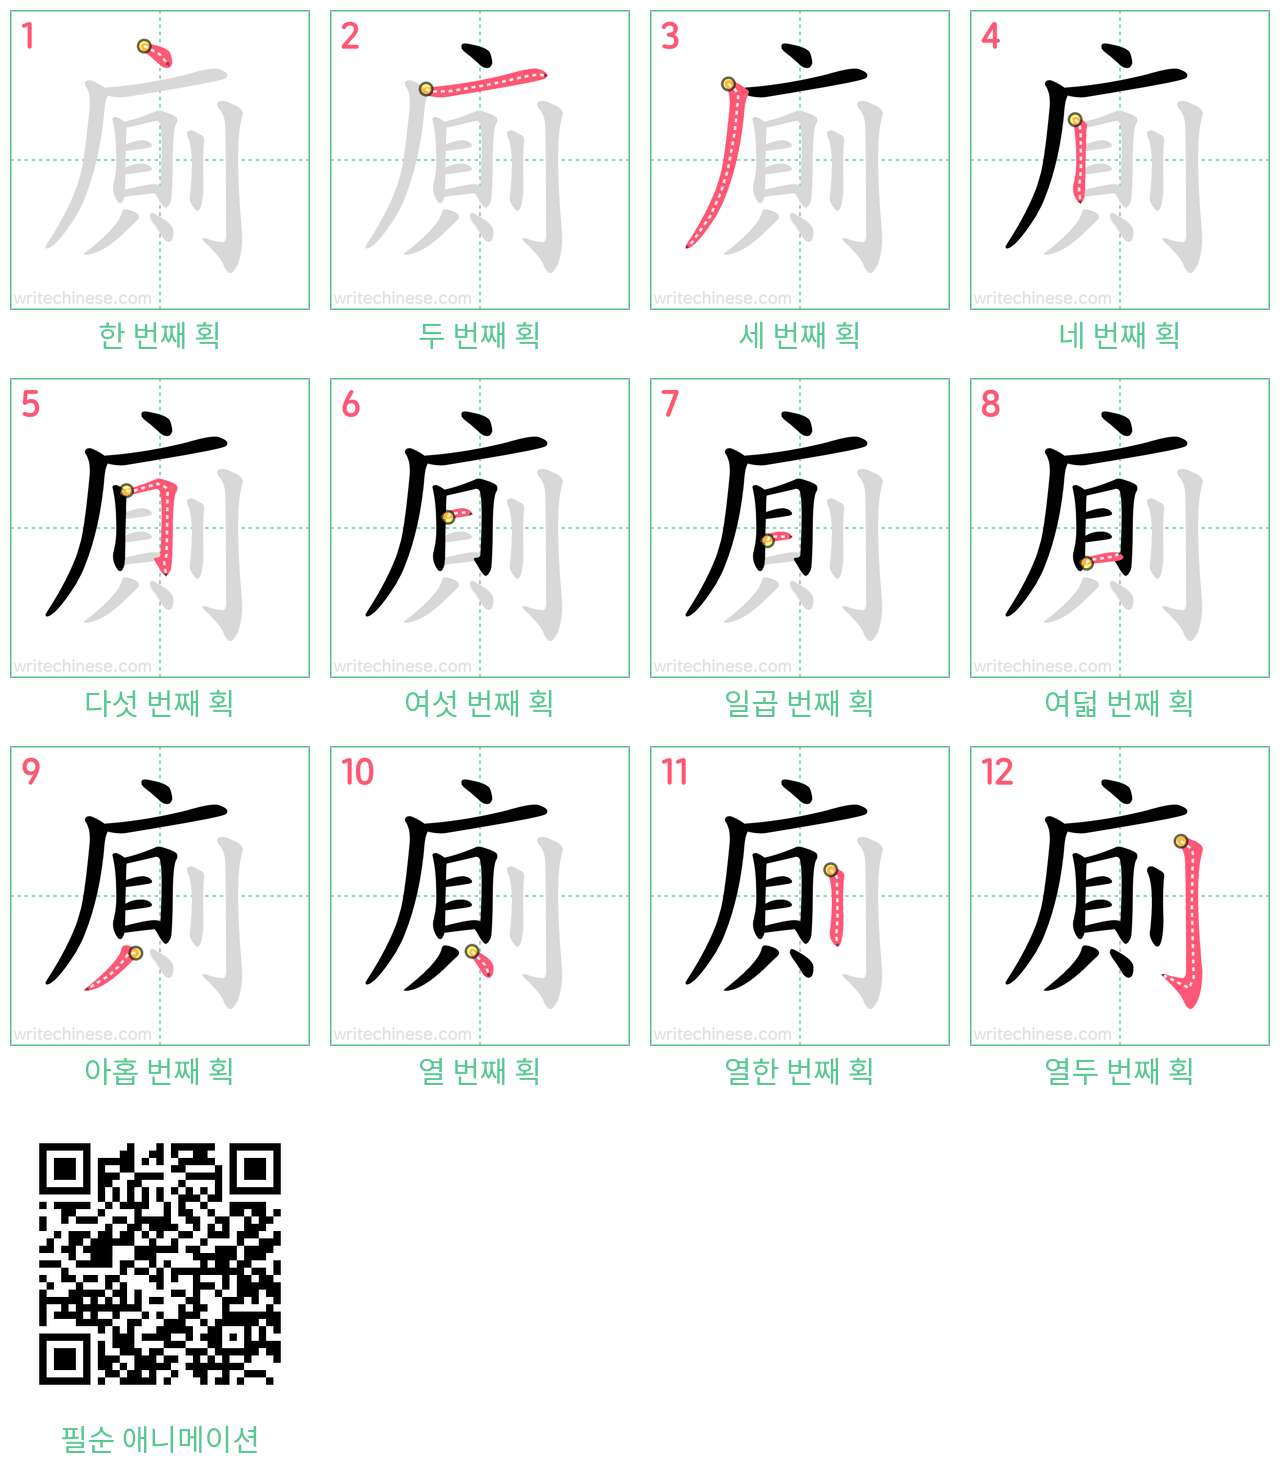 廁 step-by-step stroke order diagrams